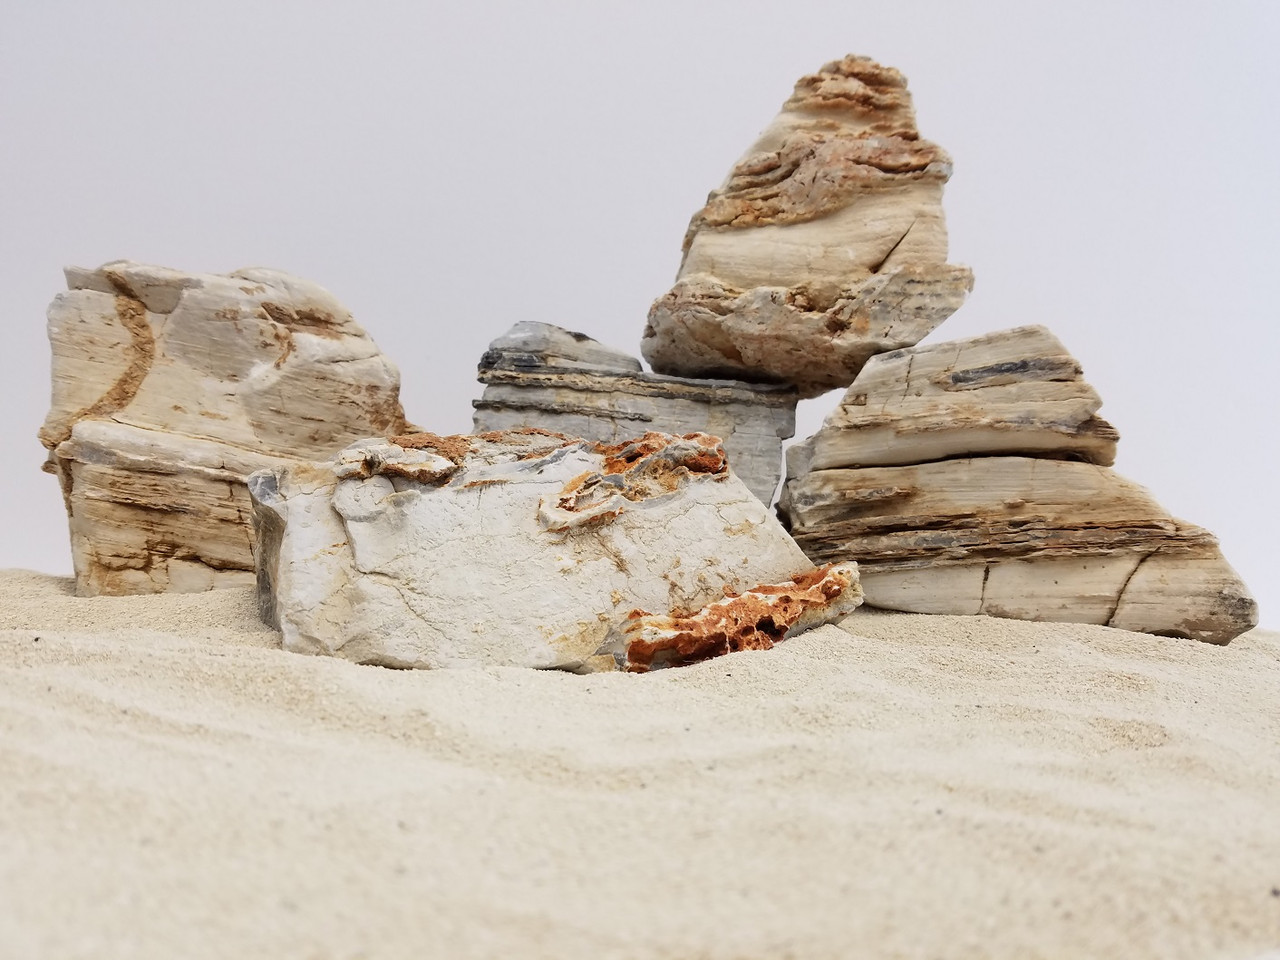 Lifegard Crema Pagoda Rock - 15 Lbs Mix Size Kit of Medium and Small Rocks